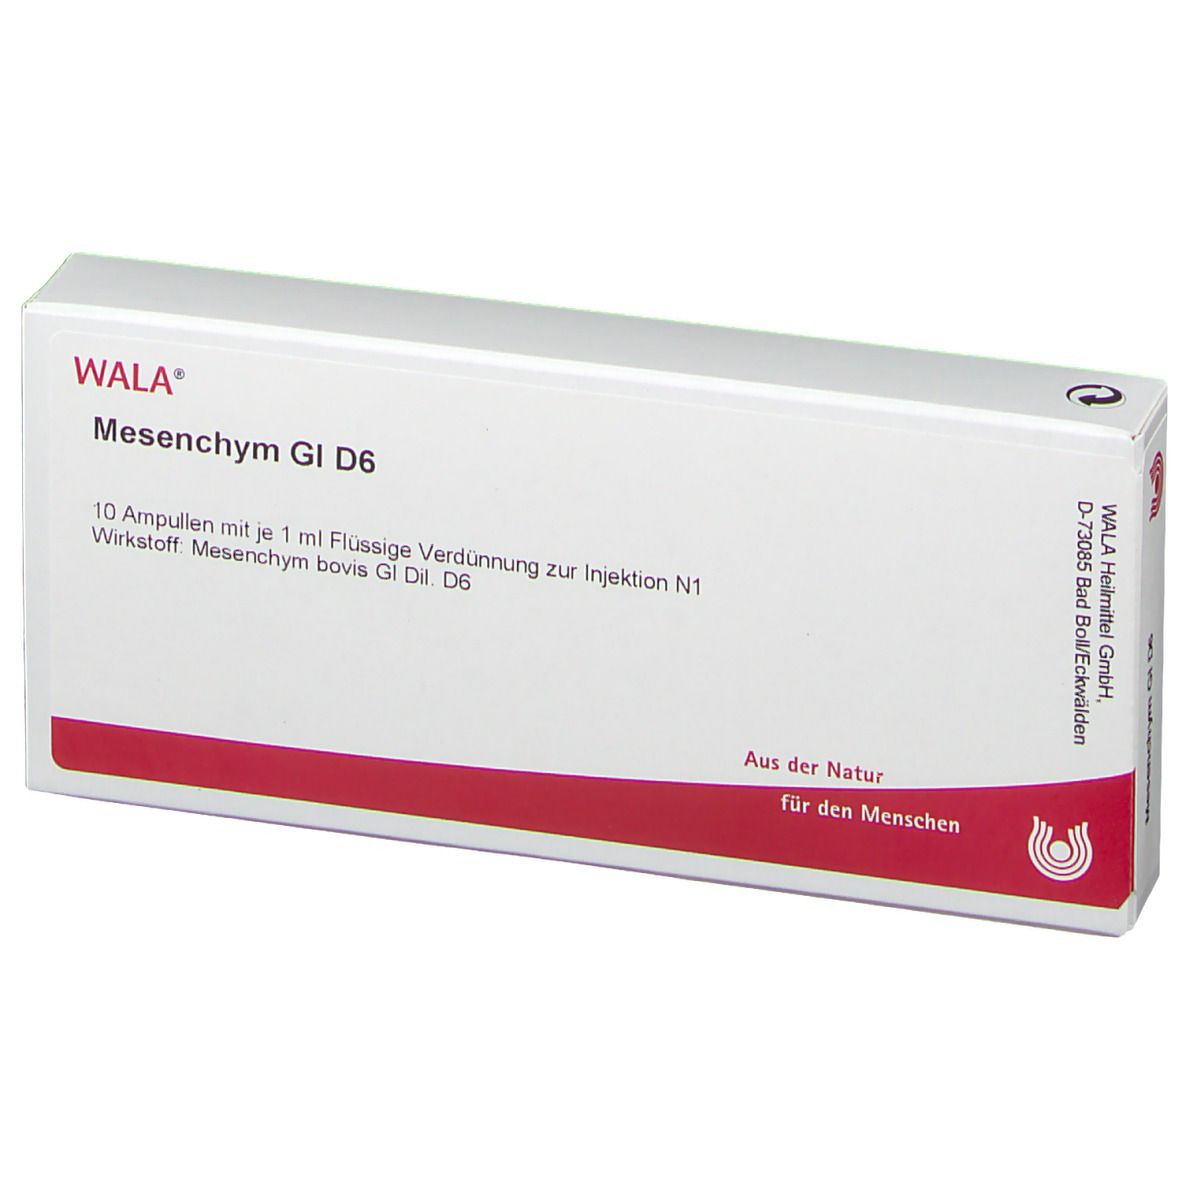 WALA® Mesenchym Gl D 6 Ampullen